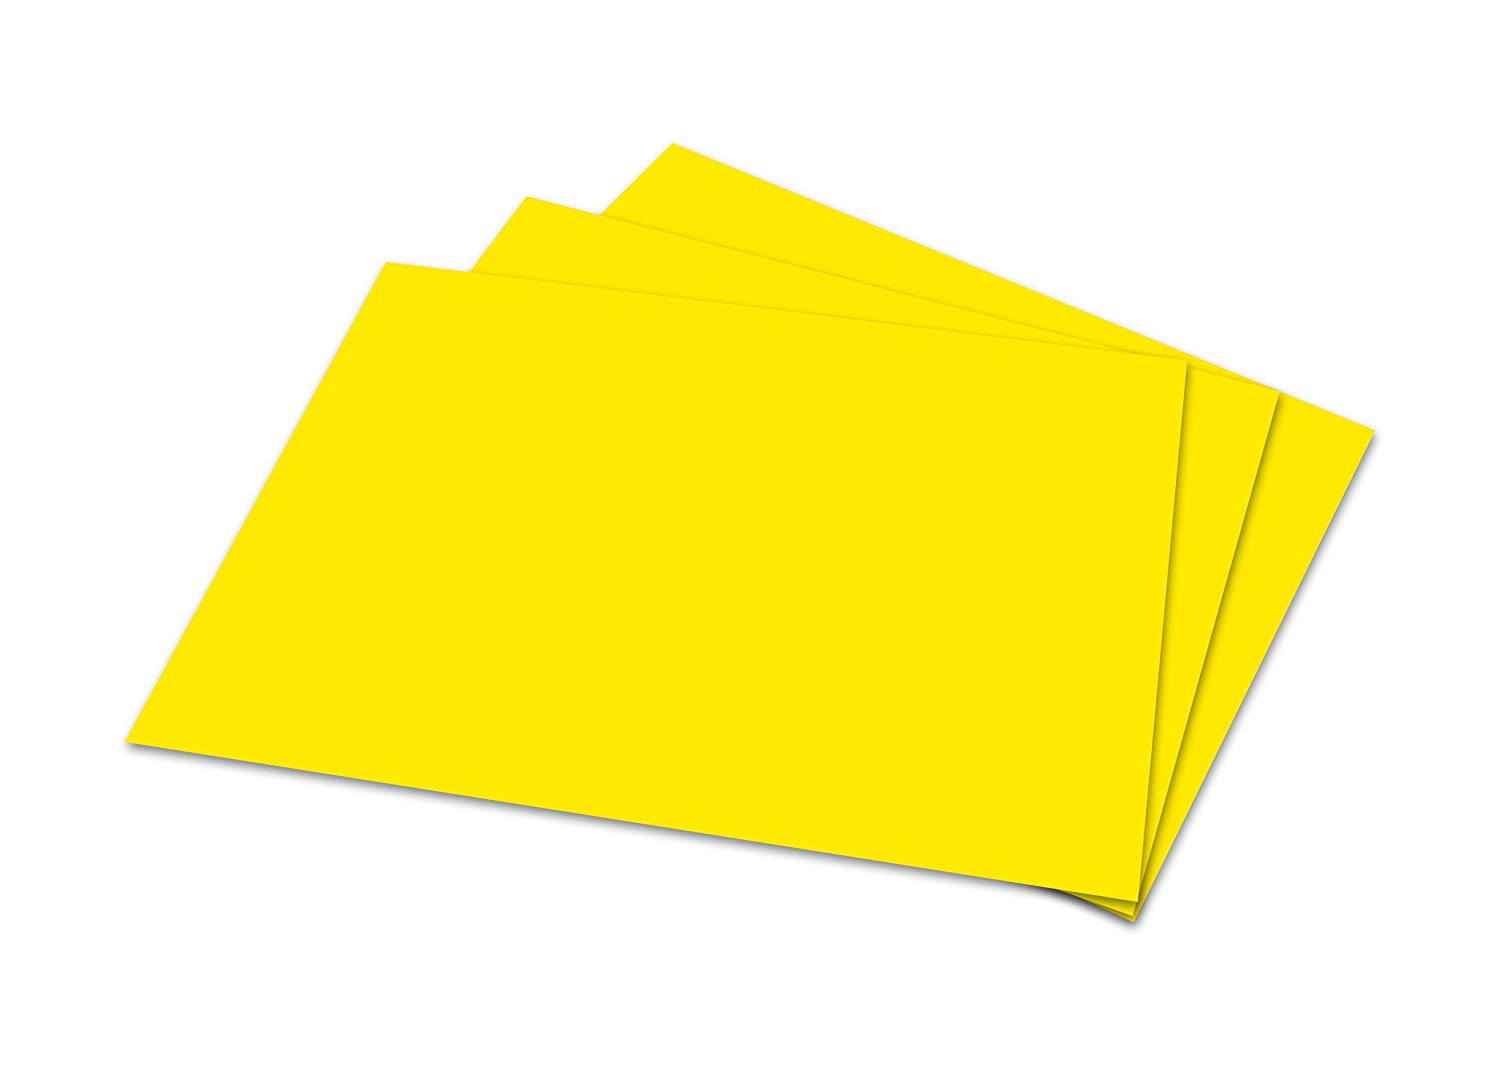 A4 20lb Pastel Yellow Paper